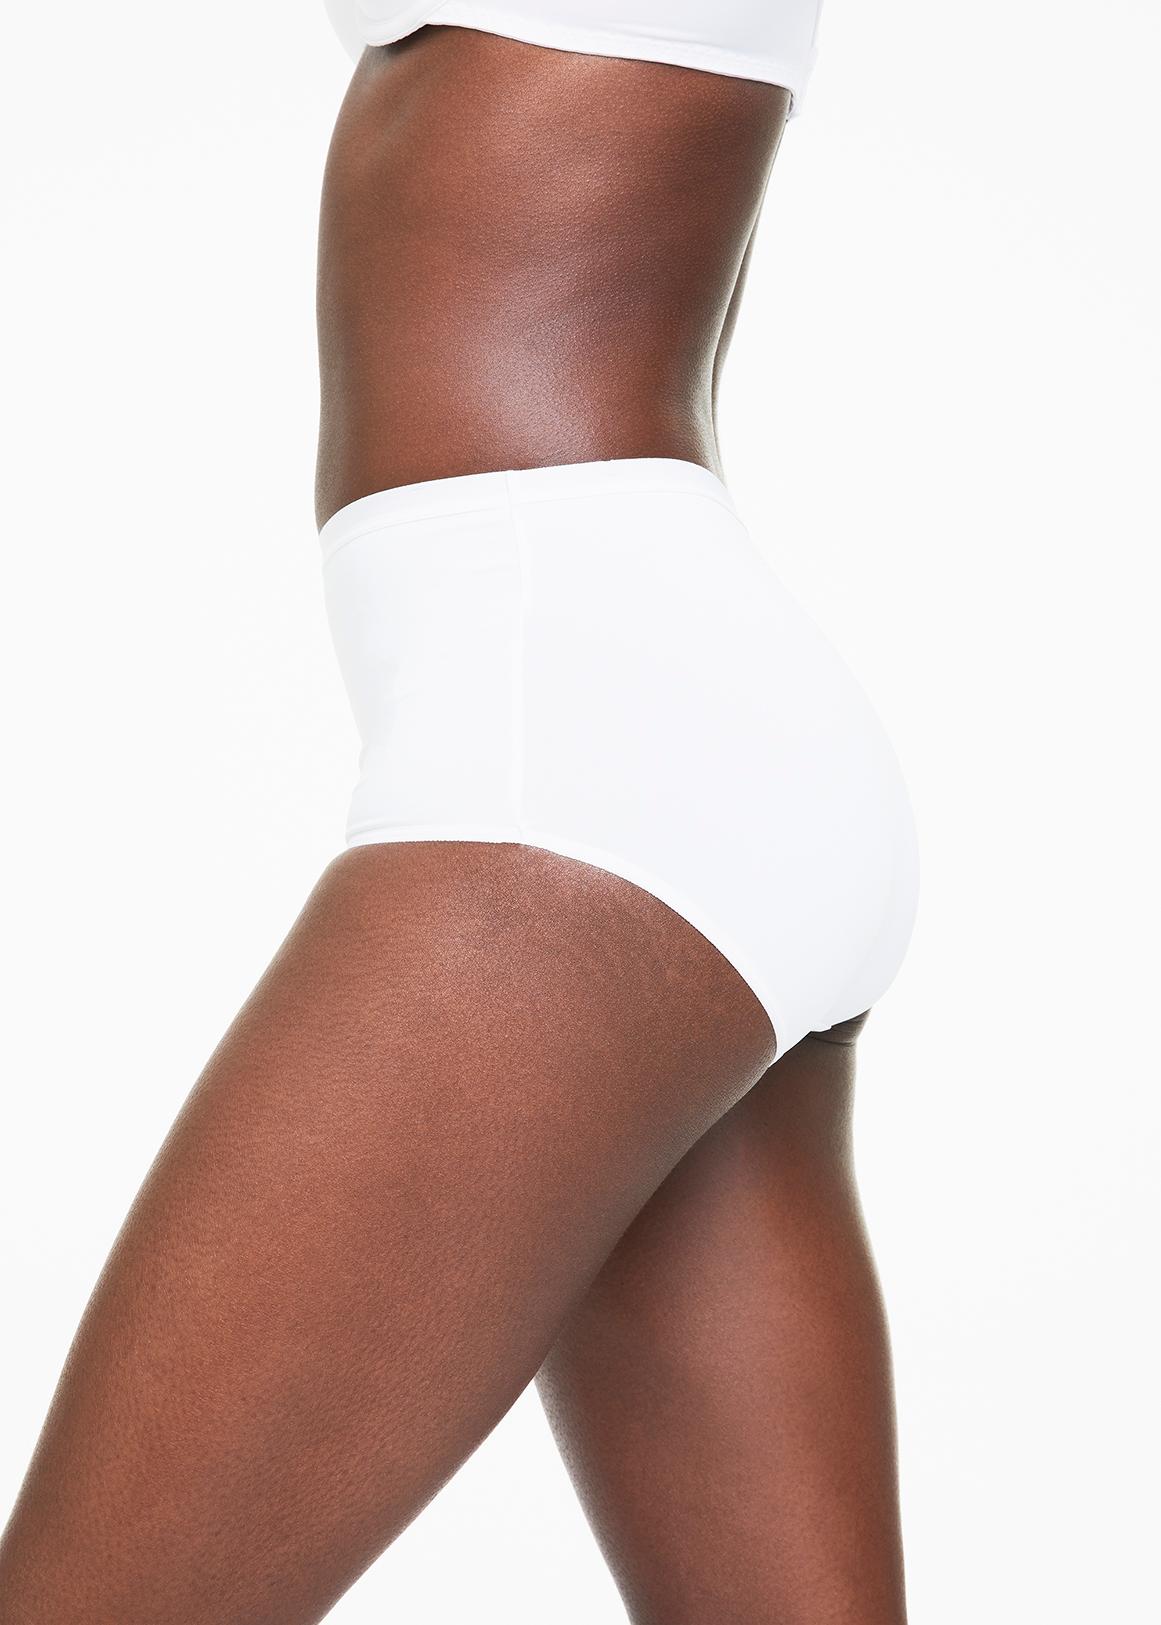 Buy The Kite Girls Underwear Toddker Briefs Cotton 6-Pack Size 2t